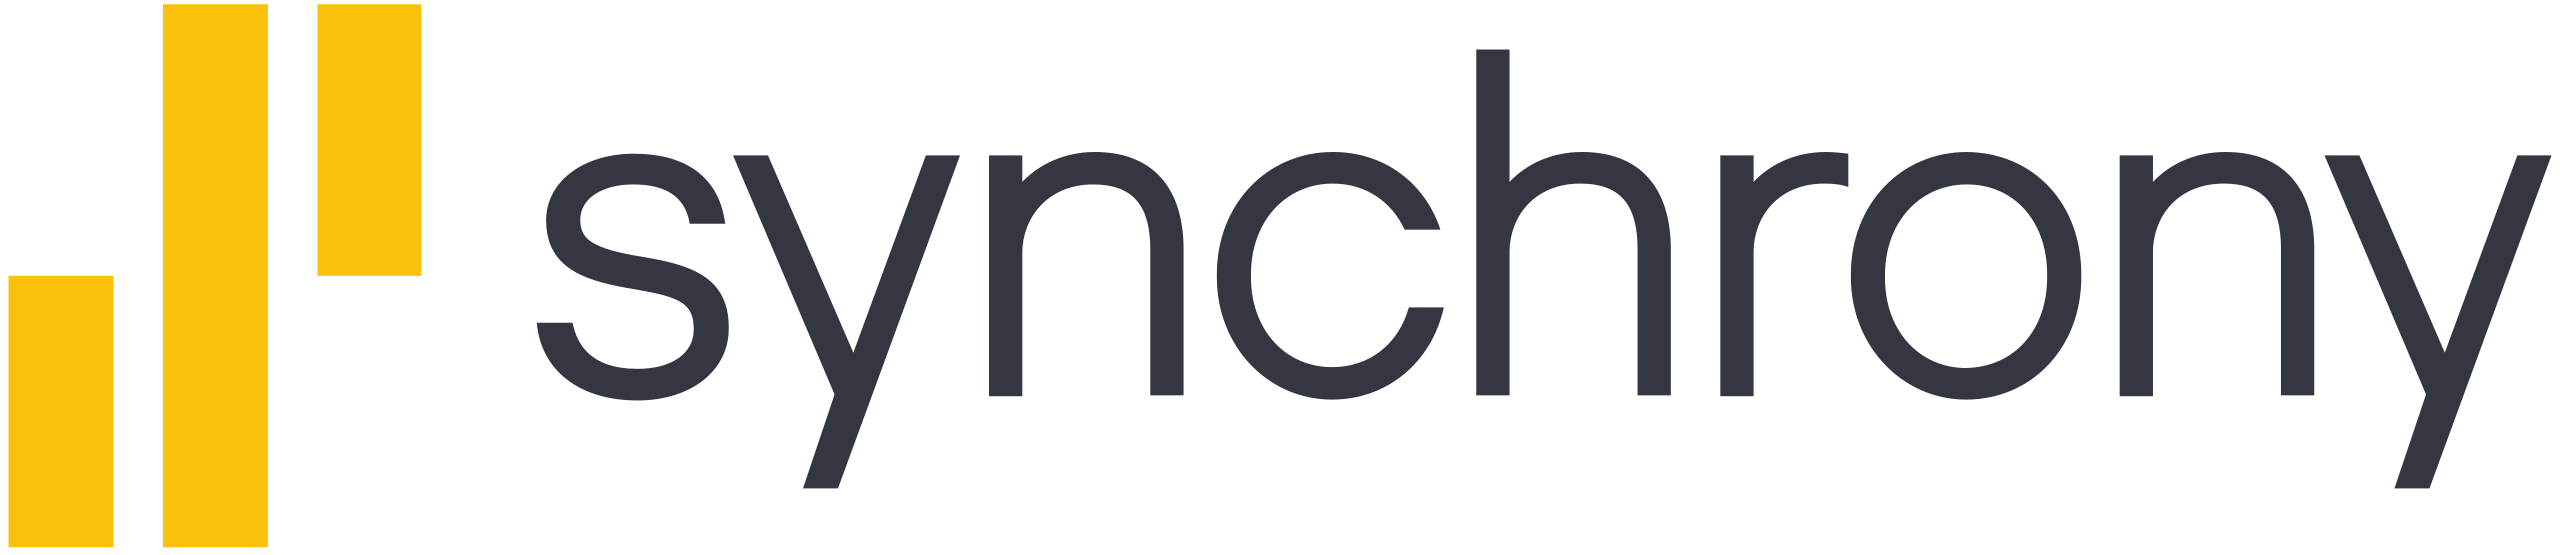 Synchrony_Financial_logo